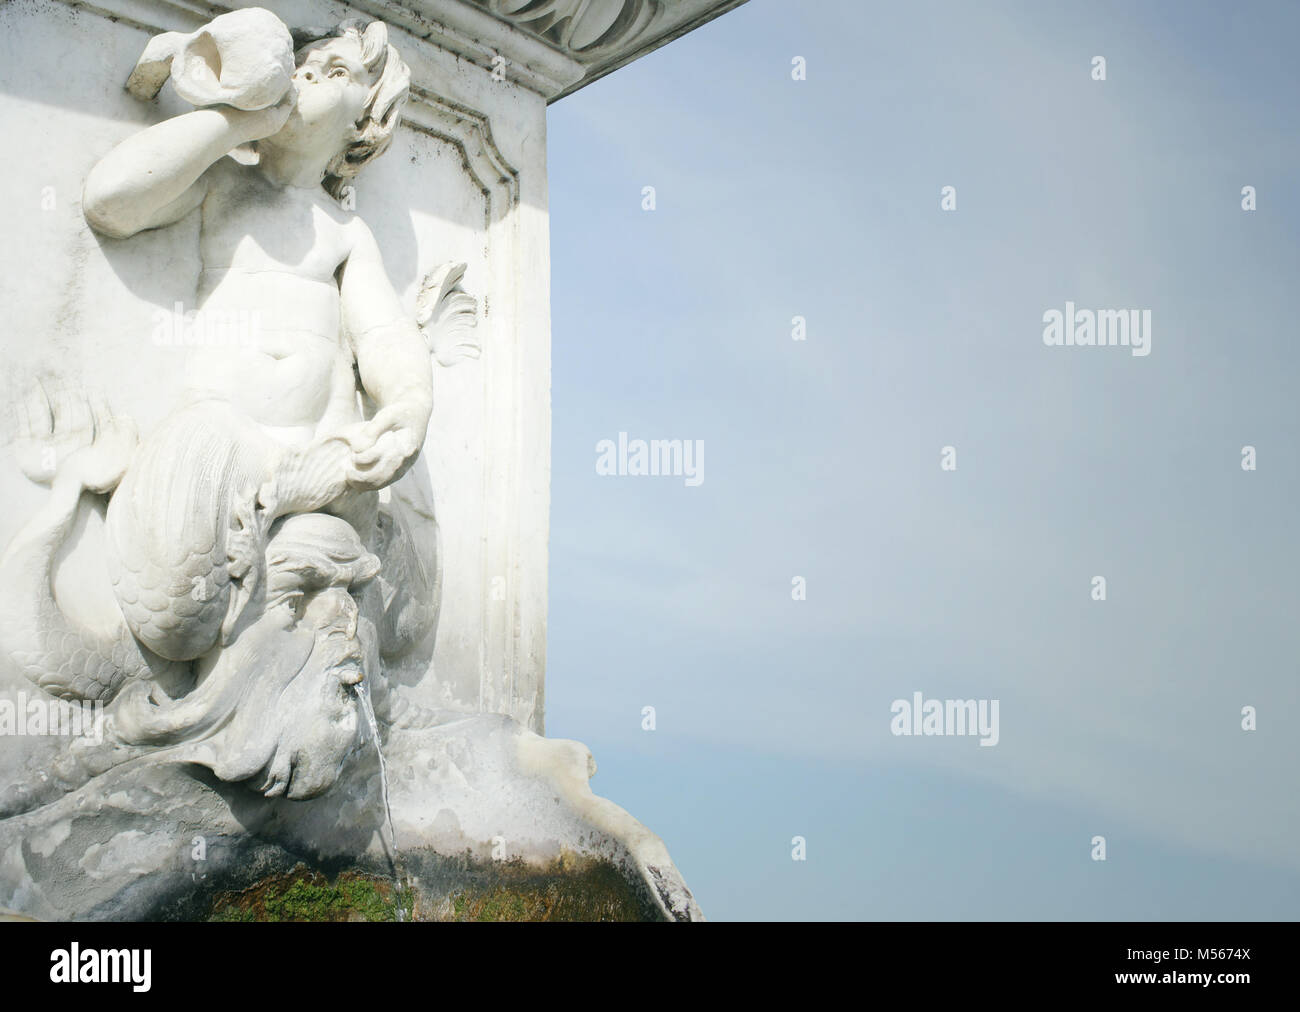 Photo détail d'une sculpture-fontaine Banque D'Images